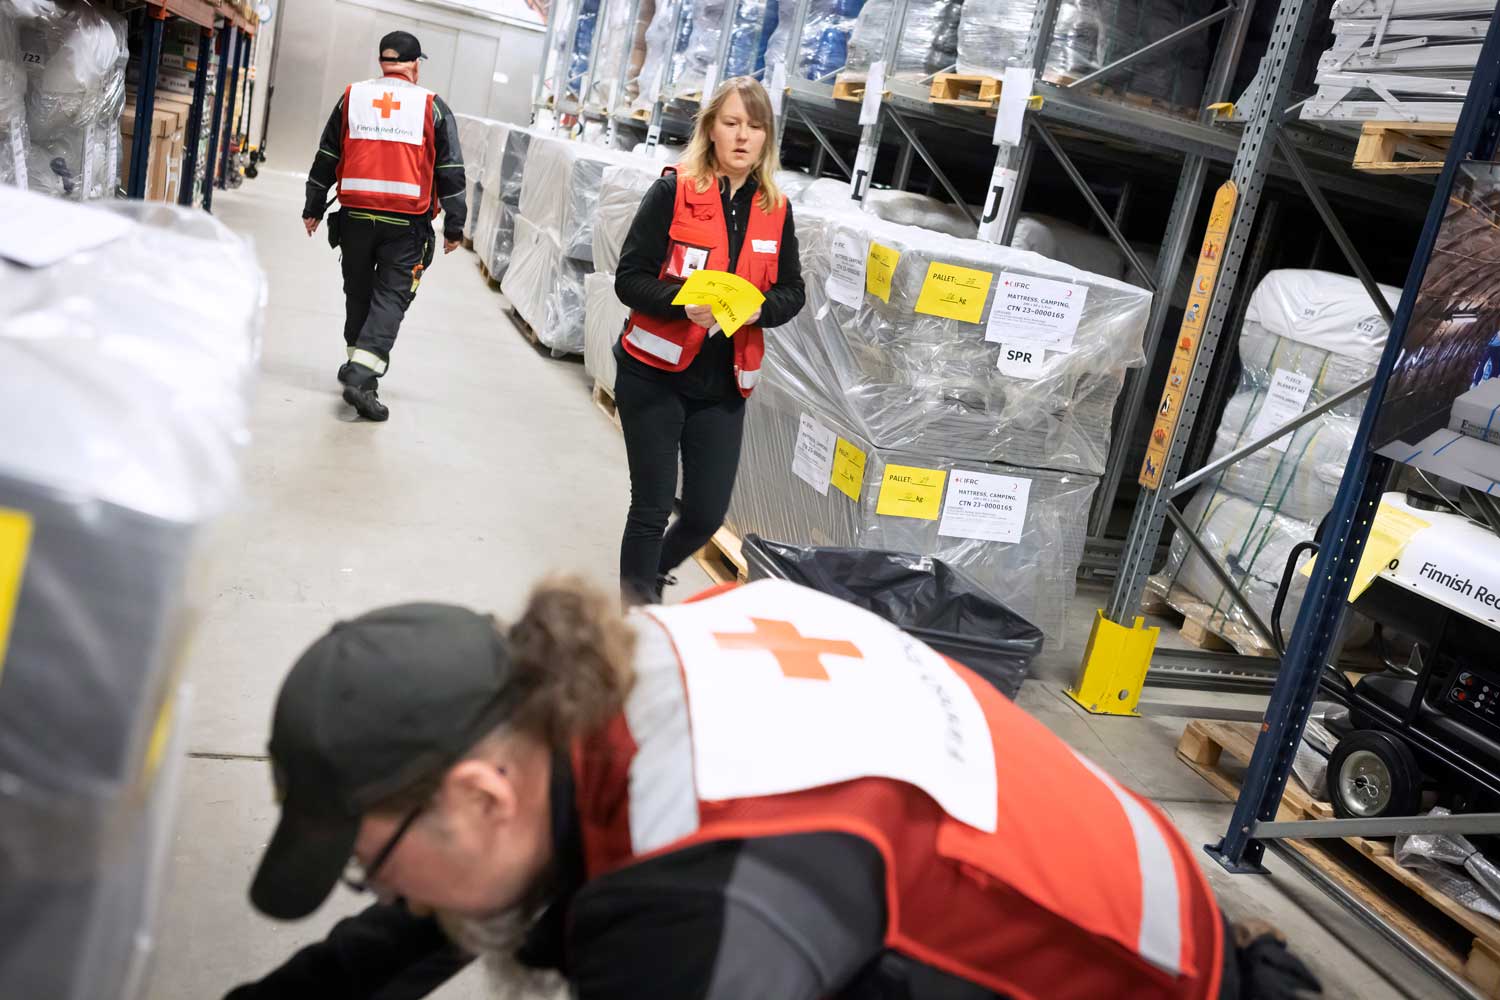 Kolme Punaisen Ristin liiveissä kulkevaa ihmistä töissä varastohallissa.